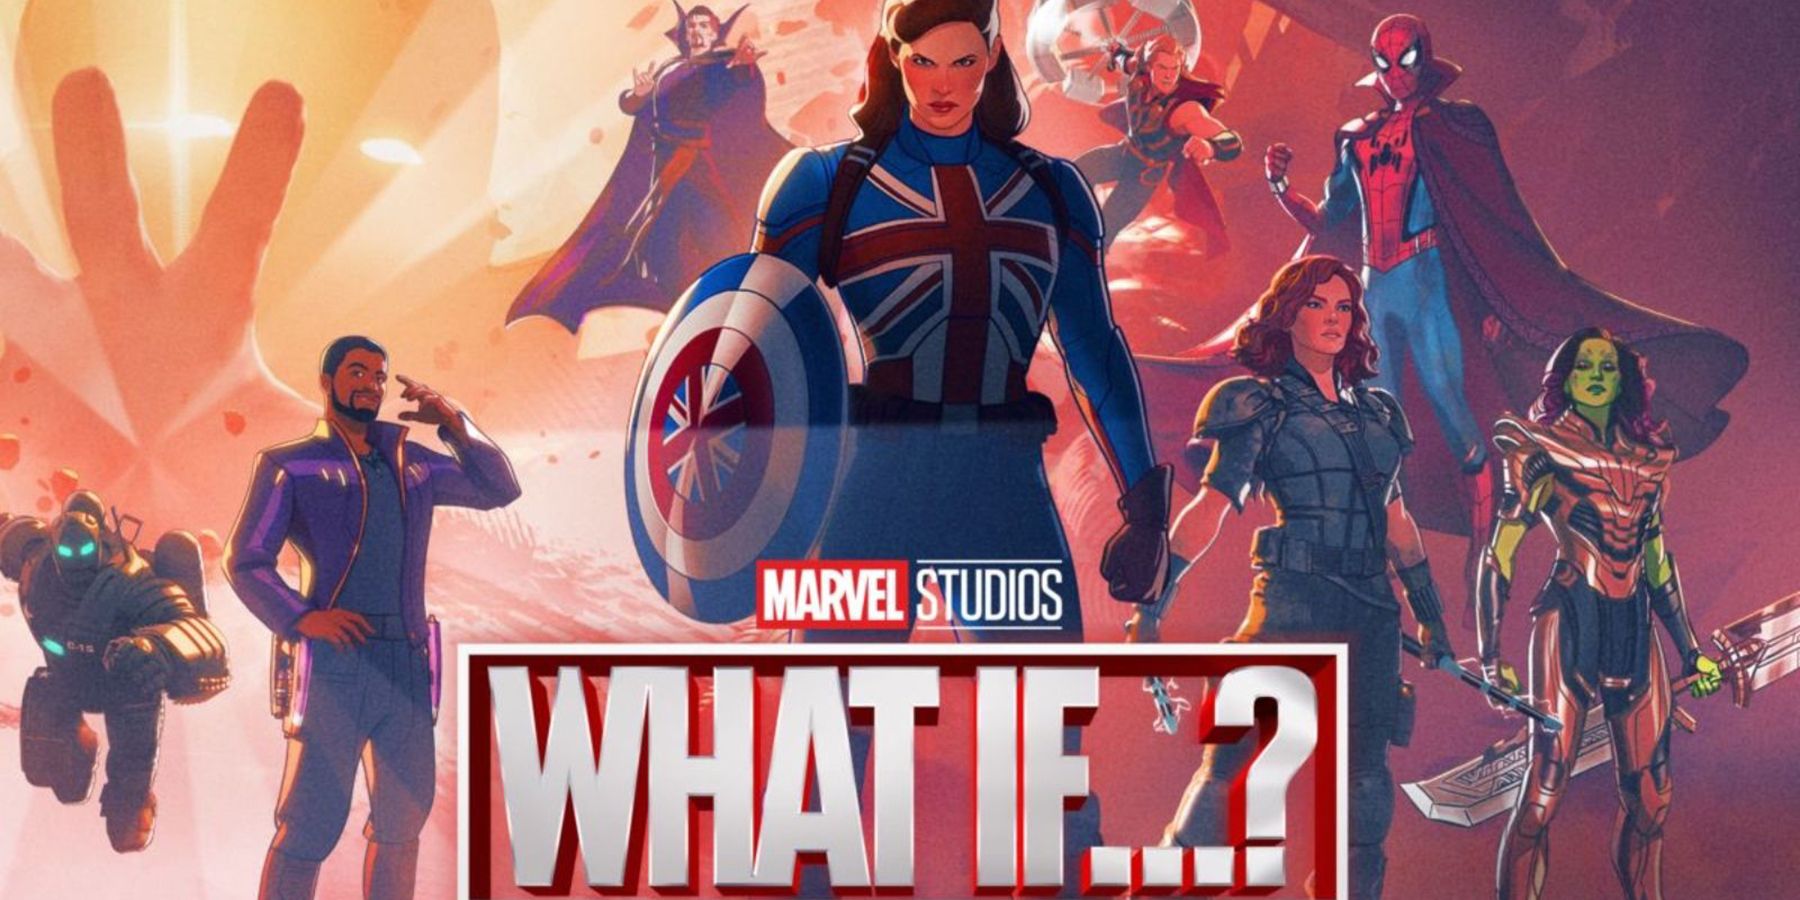 A Marvel Studios Mi lenne, ha…? Az epizódok hosszabbak voltak a COVID-19 előtt